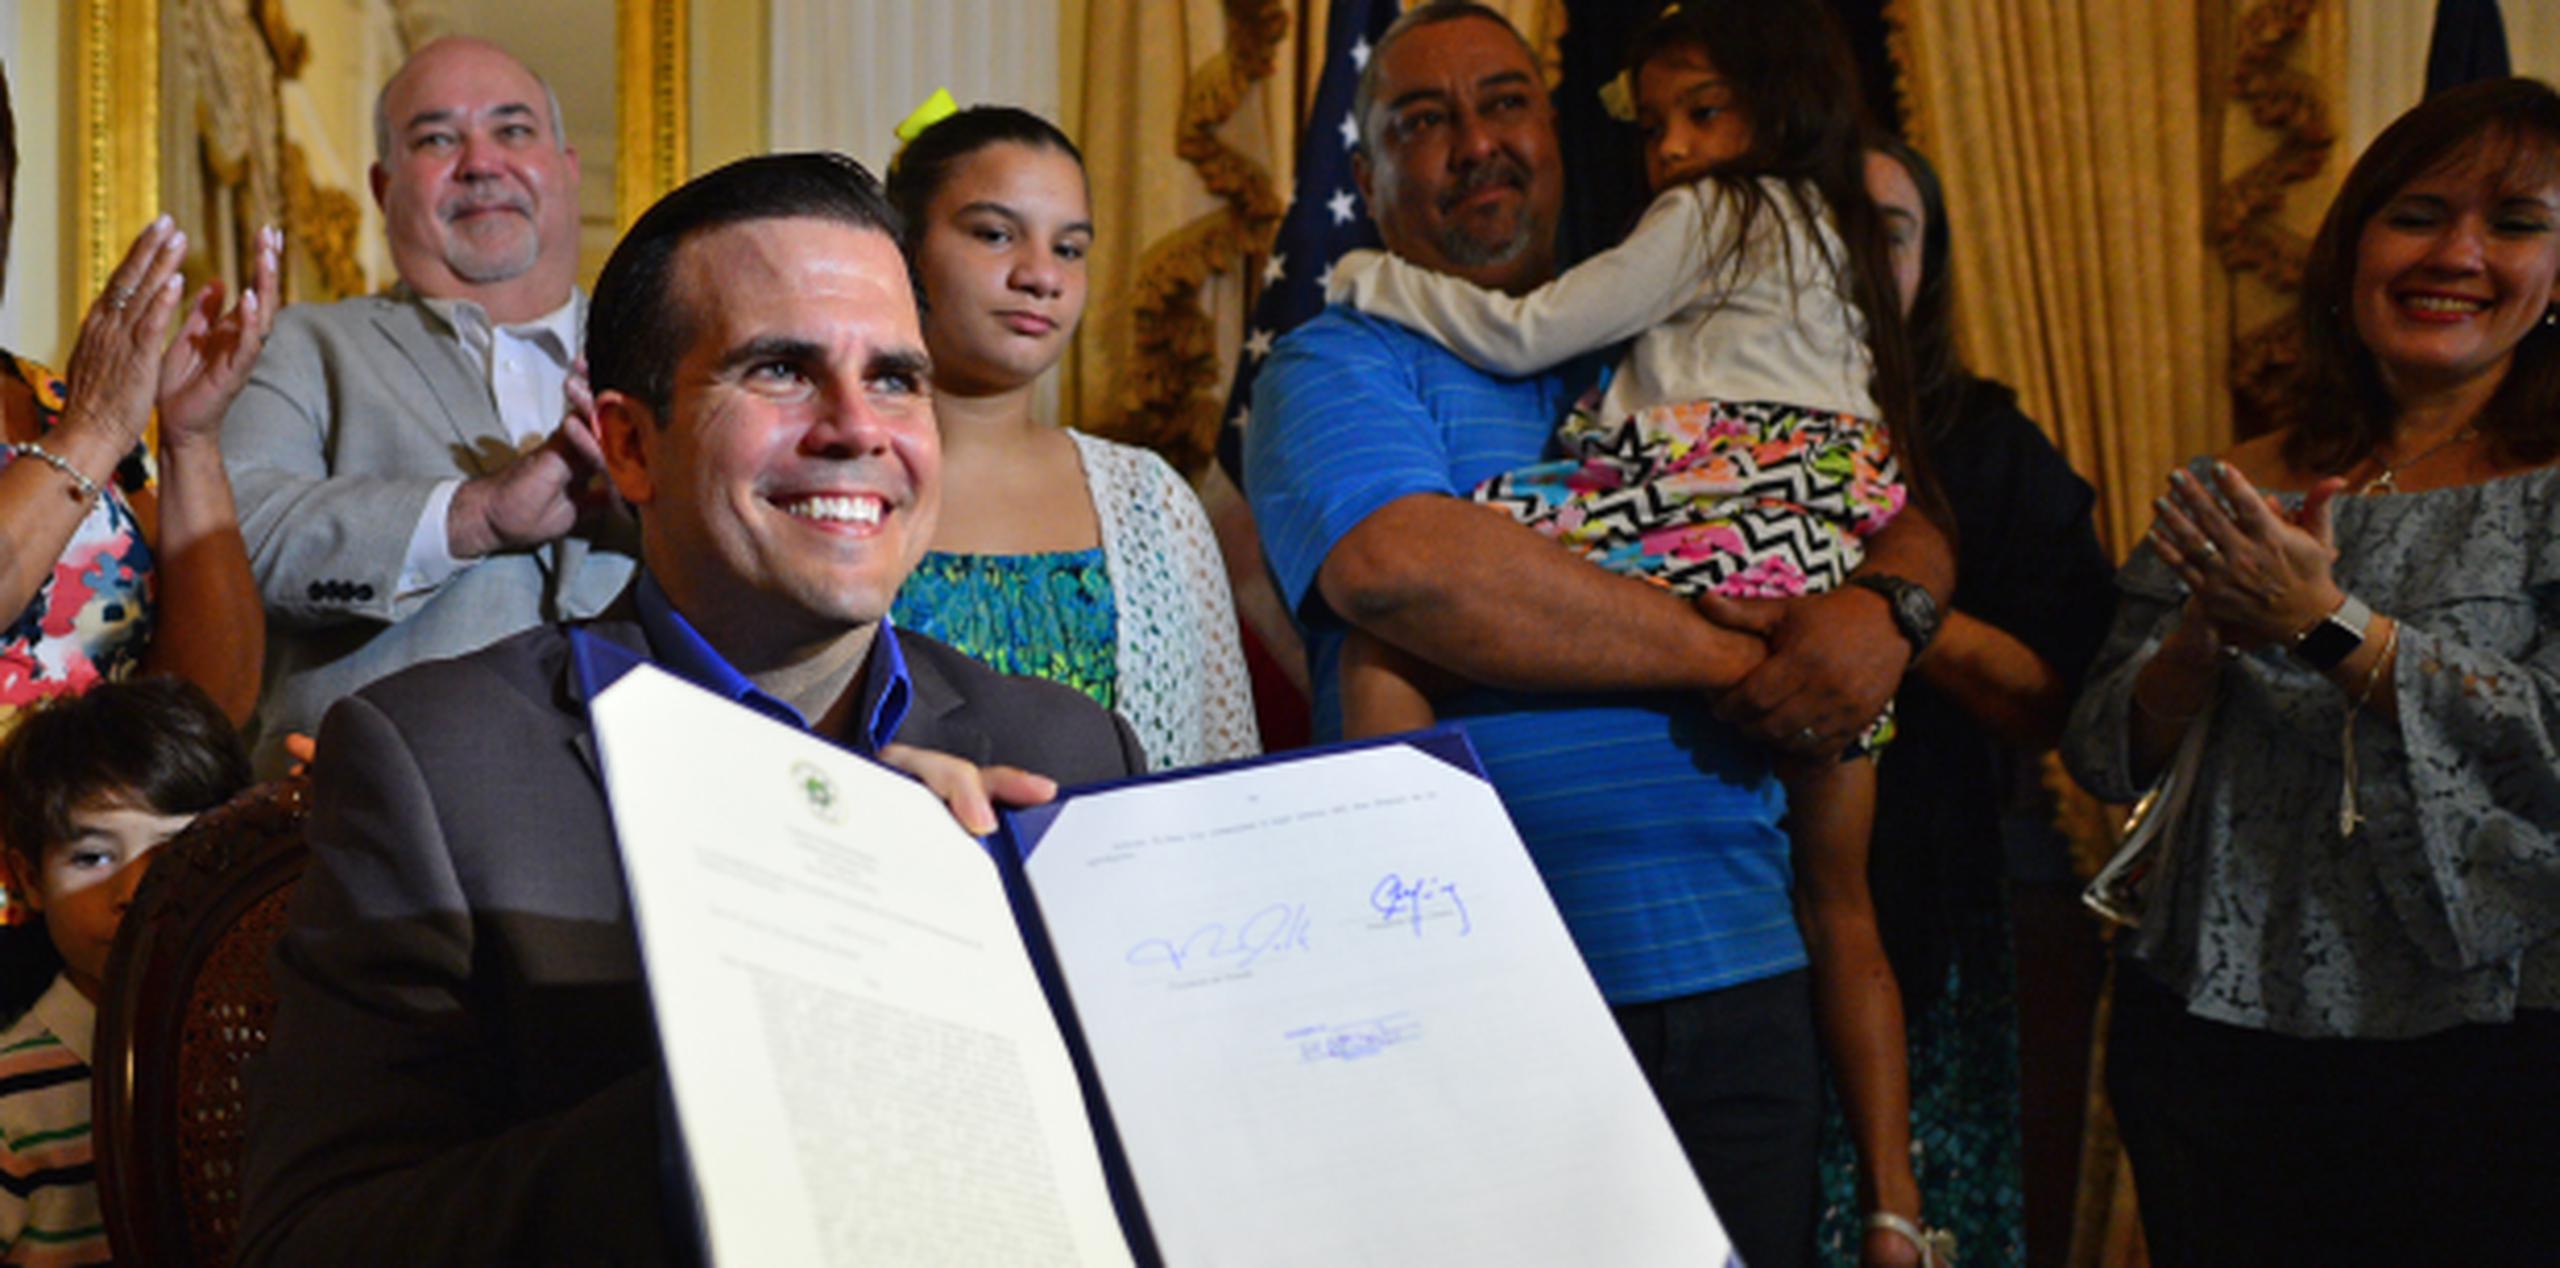 Rosselló sonríe tras estampar la firma en la nueva ley de adopción. (LUIS.ALCALADELOLMO@GFRMEDIA.COM)